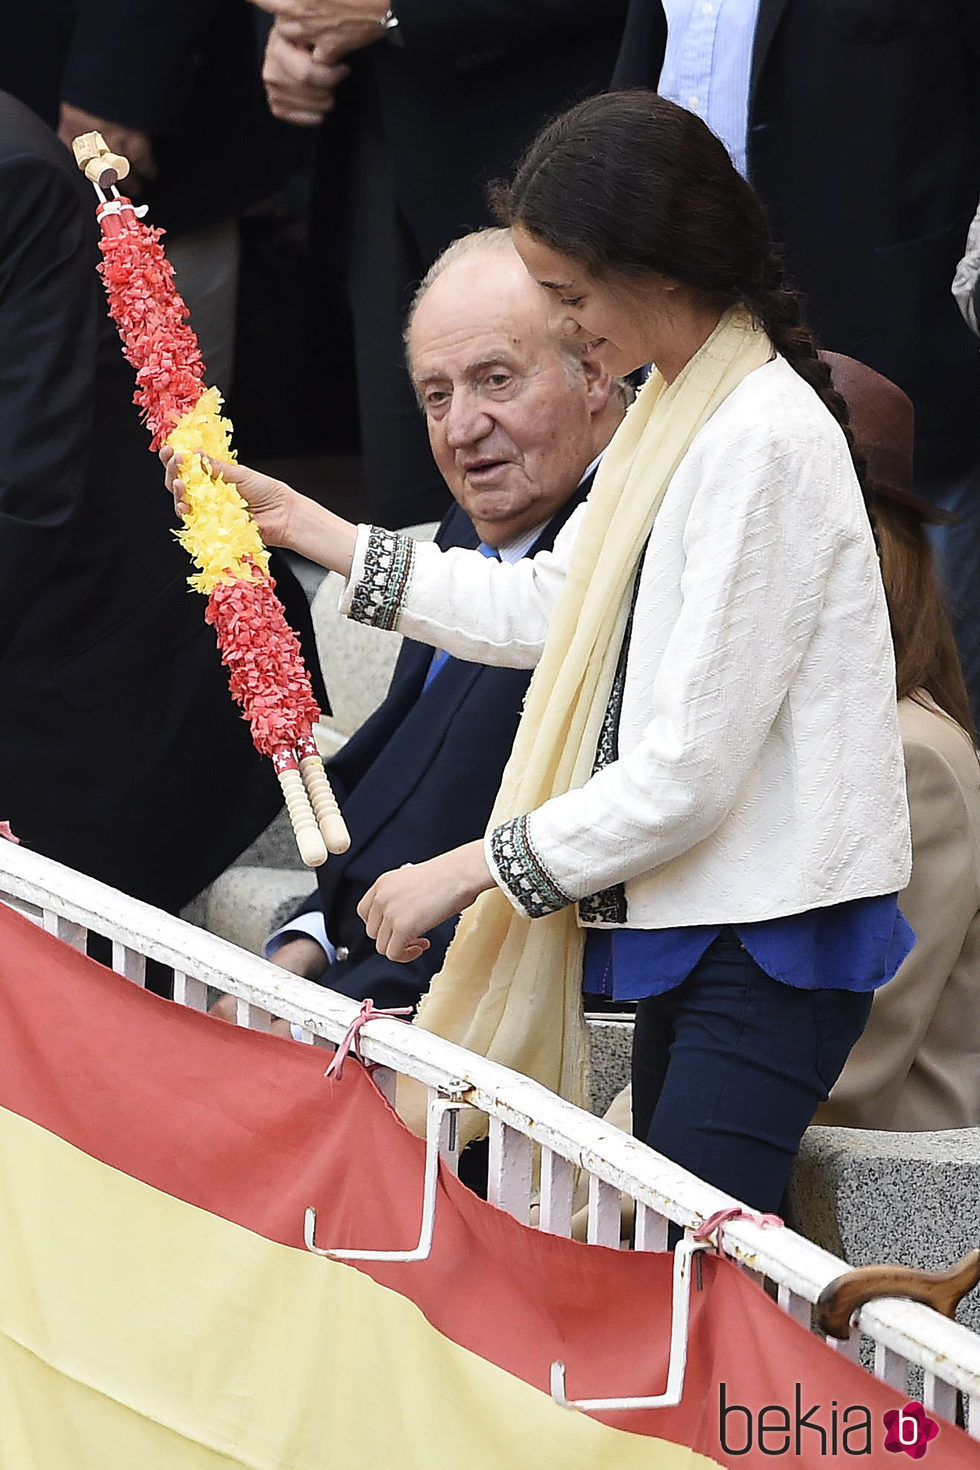 El Rey Juan Carlos y Victoria Federica con una banderilla en la corrida de San Isidro 2016